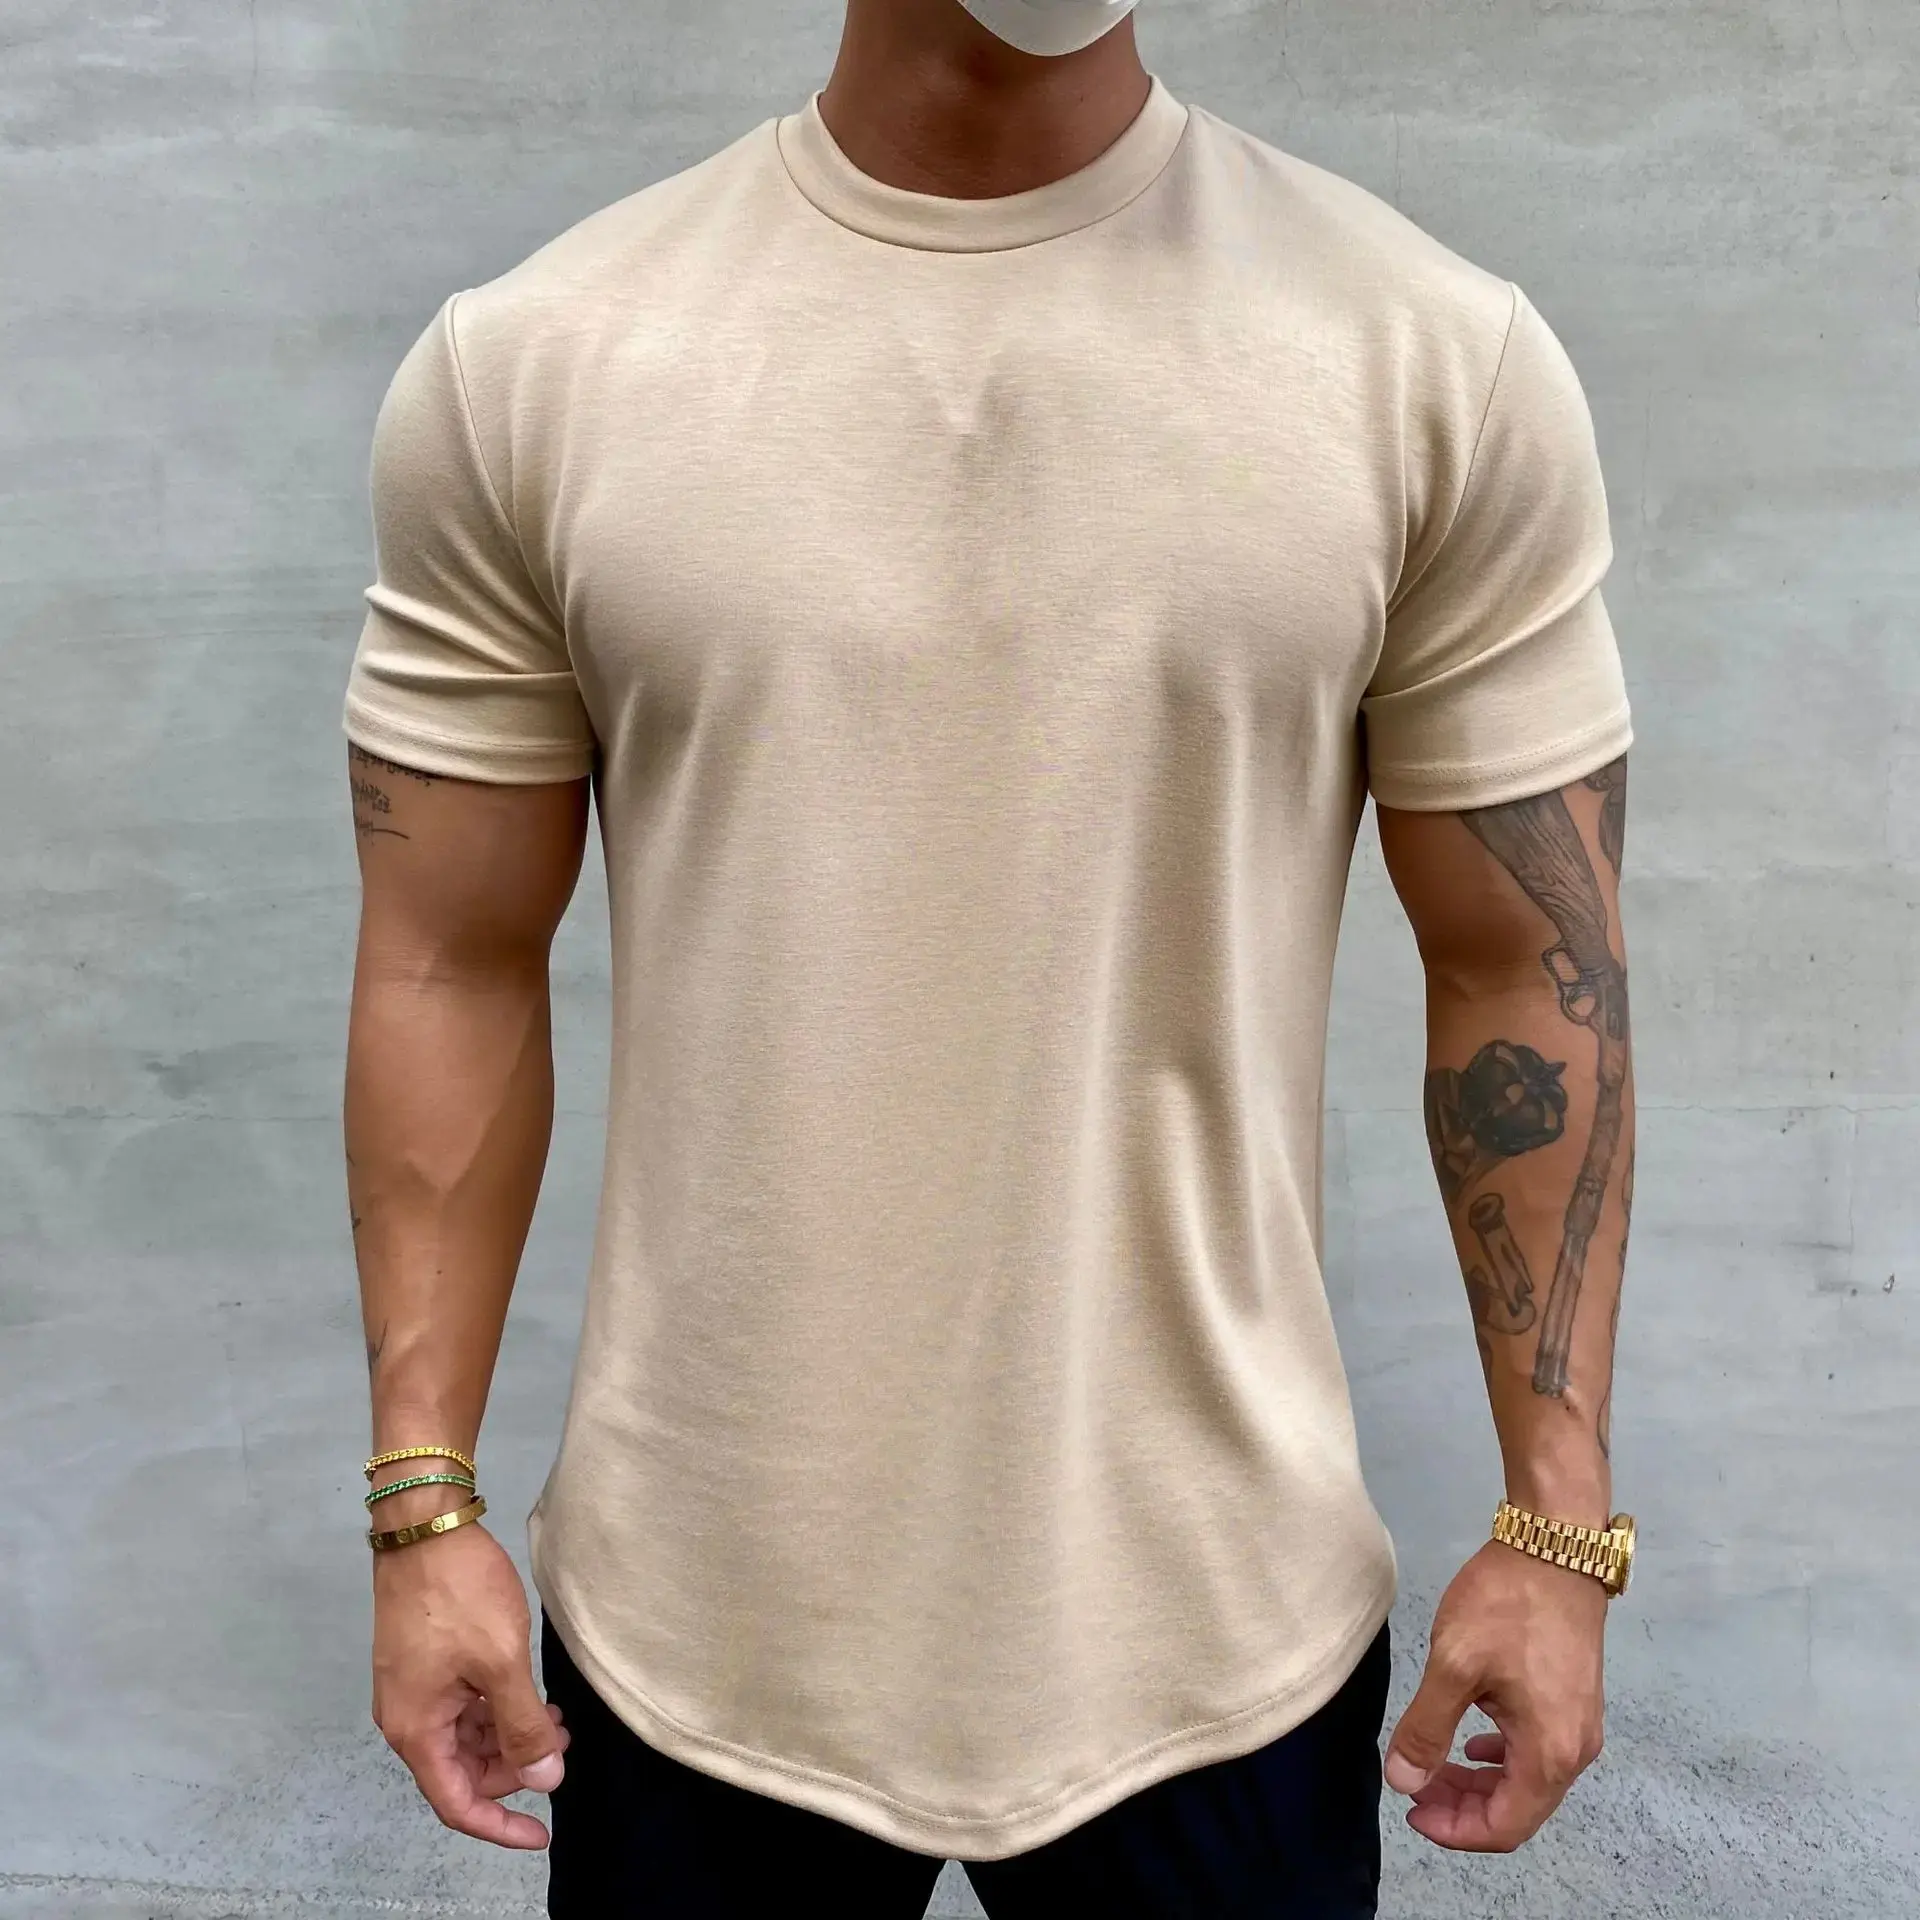 Yüksek kaliteli 95 pamuk 5 Spandex spor T Shirt hızlı kuru nefes eğitim özel baskı logosu için boy spor erkekler t shirt